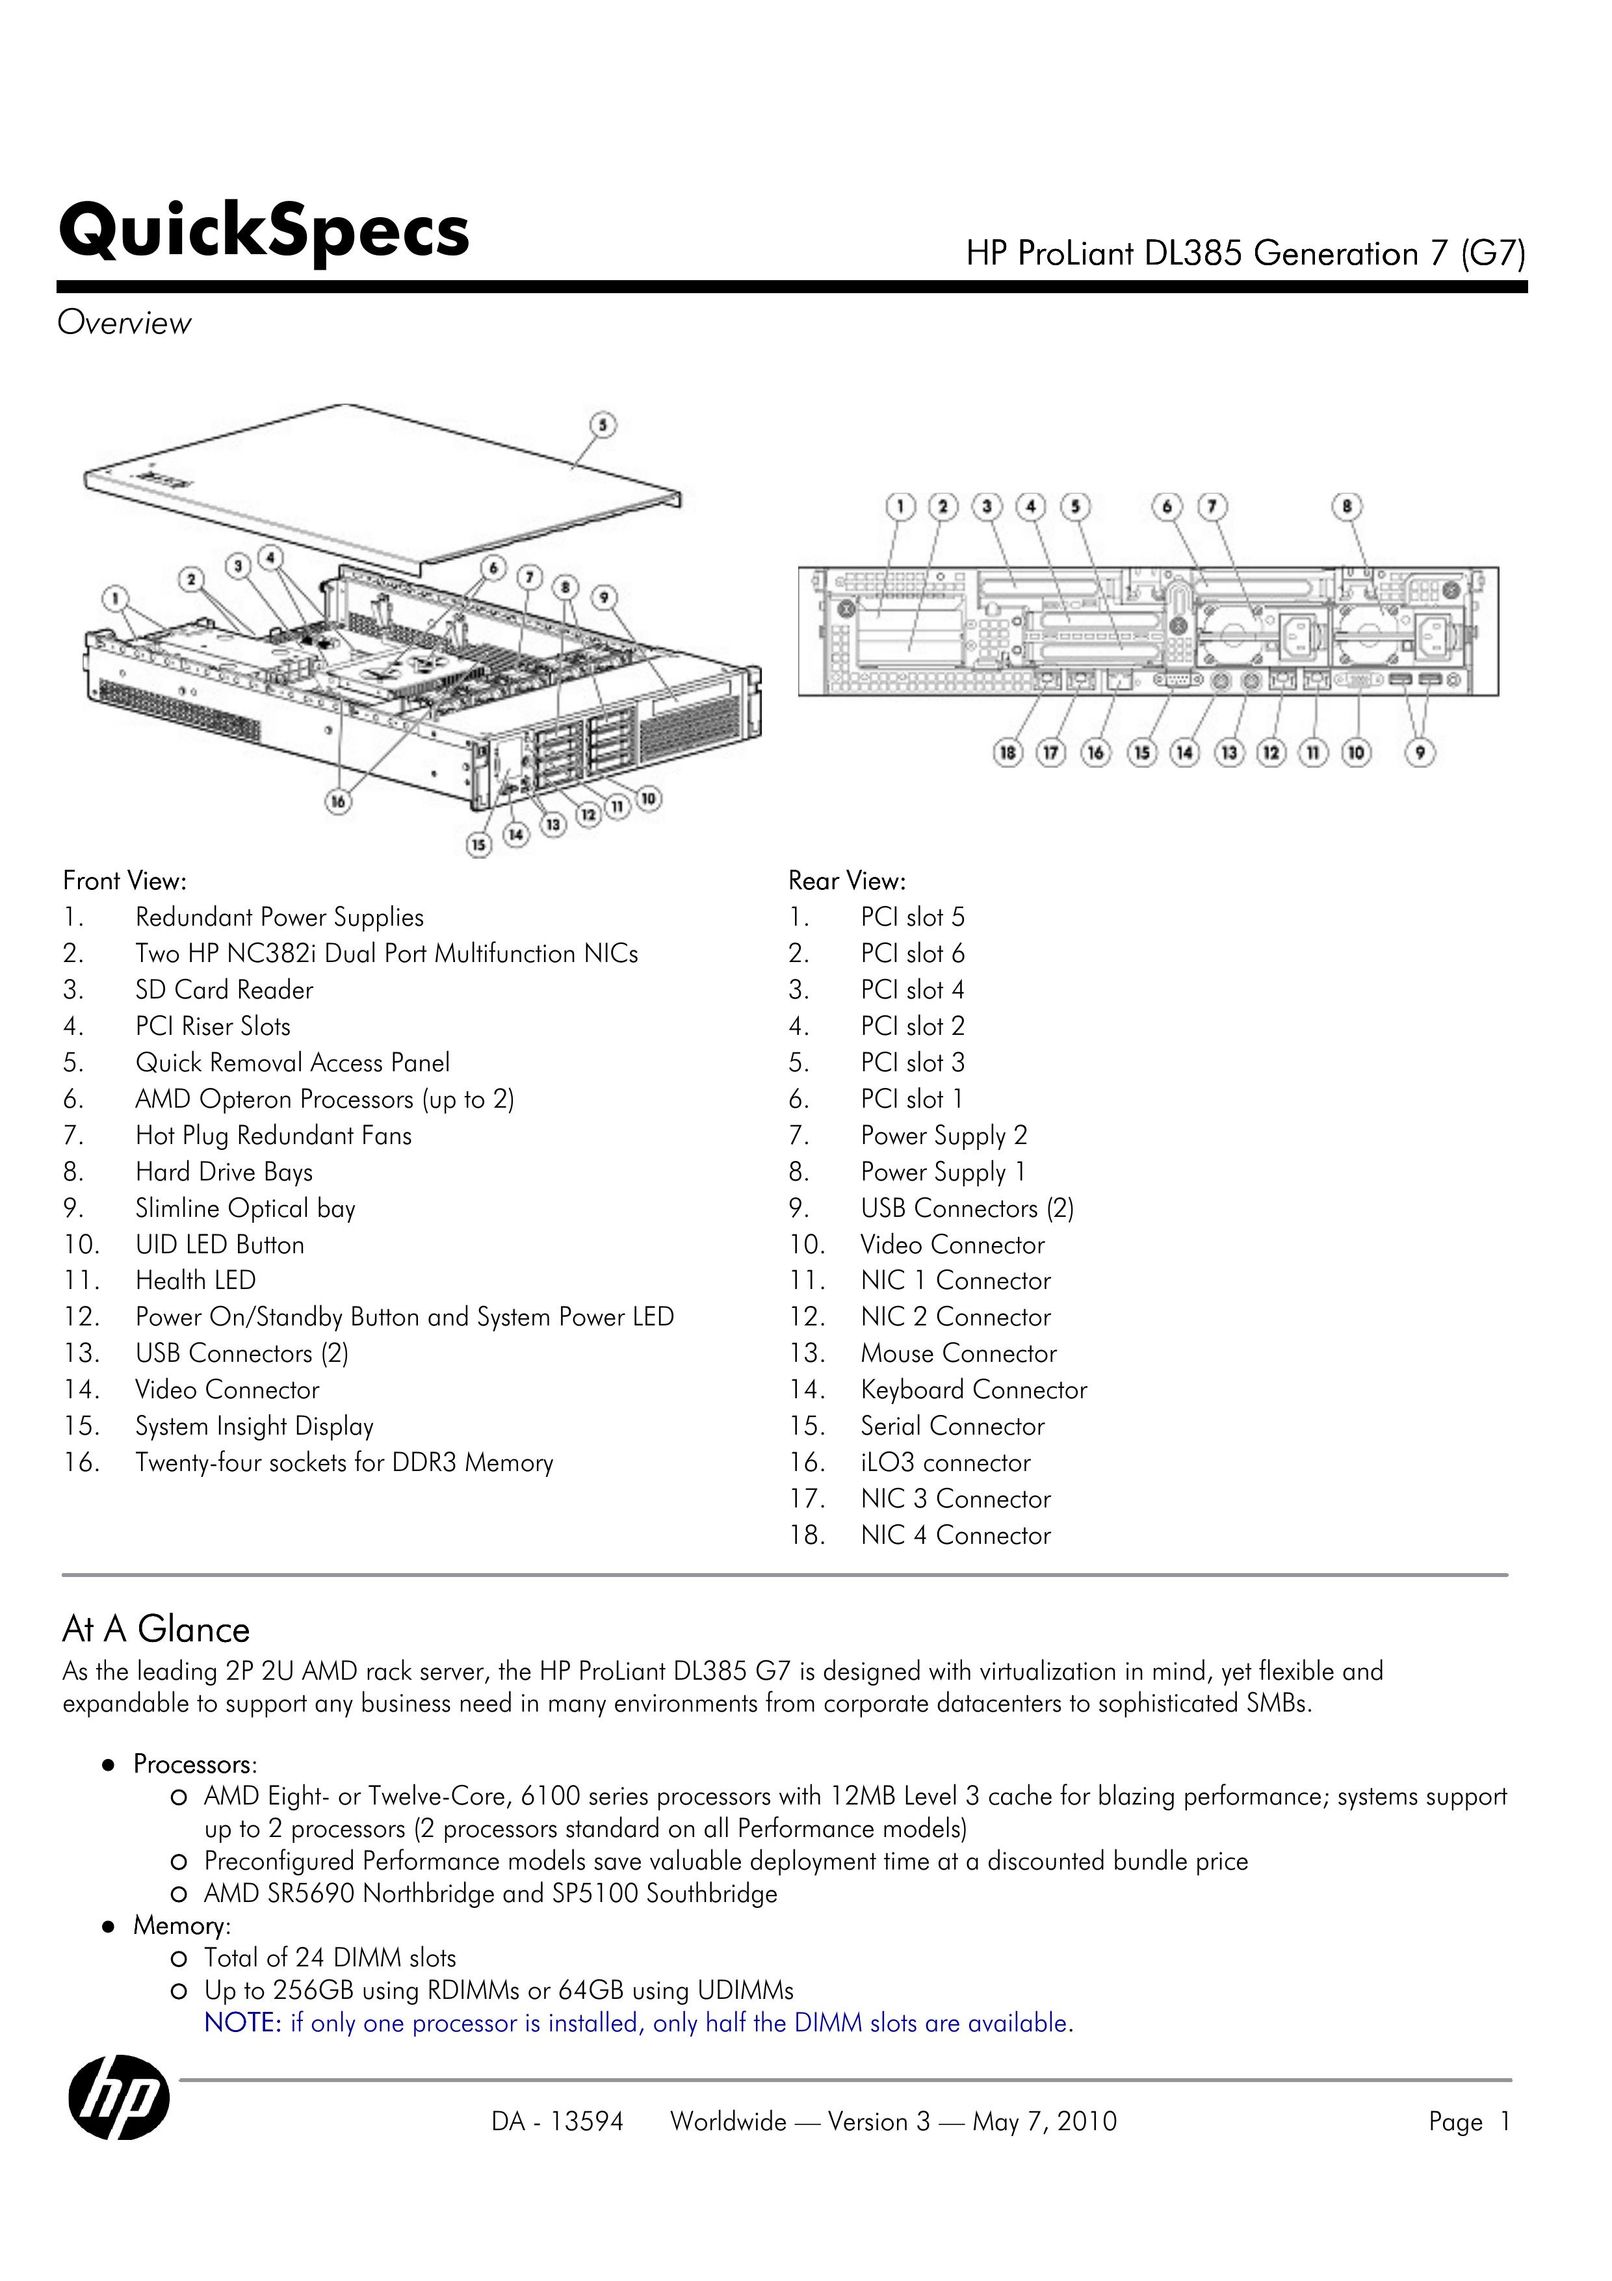 HP (Hewlett-Packard) DL385 Computer Hardware User Manual